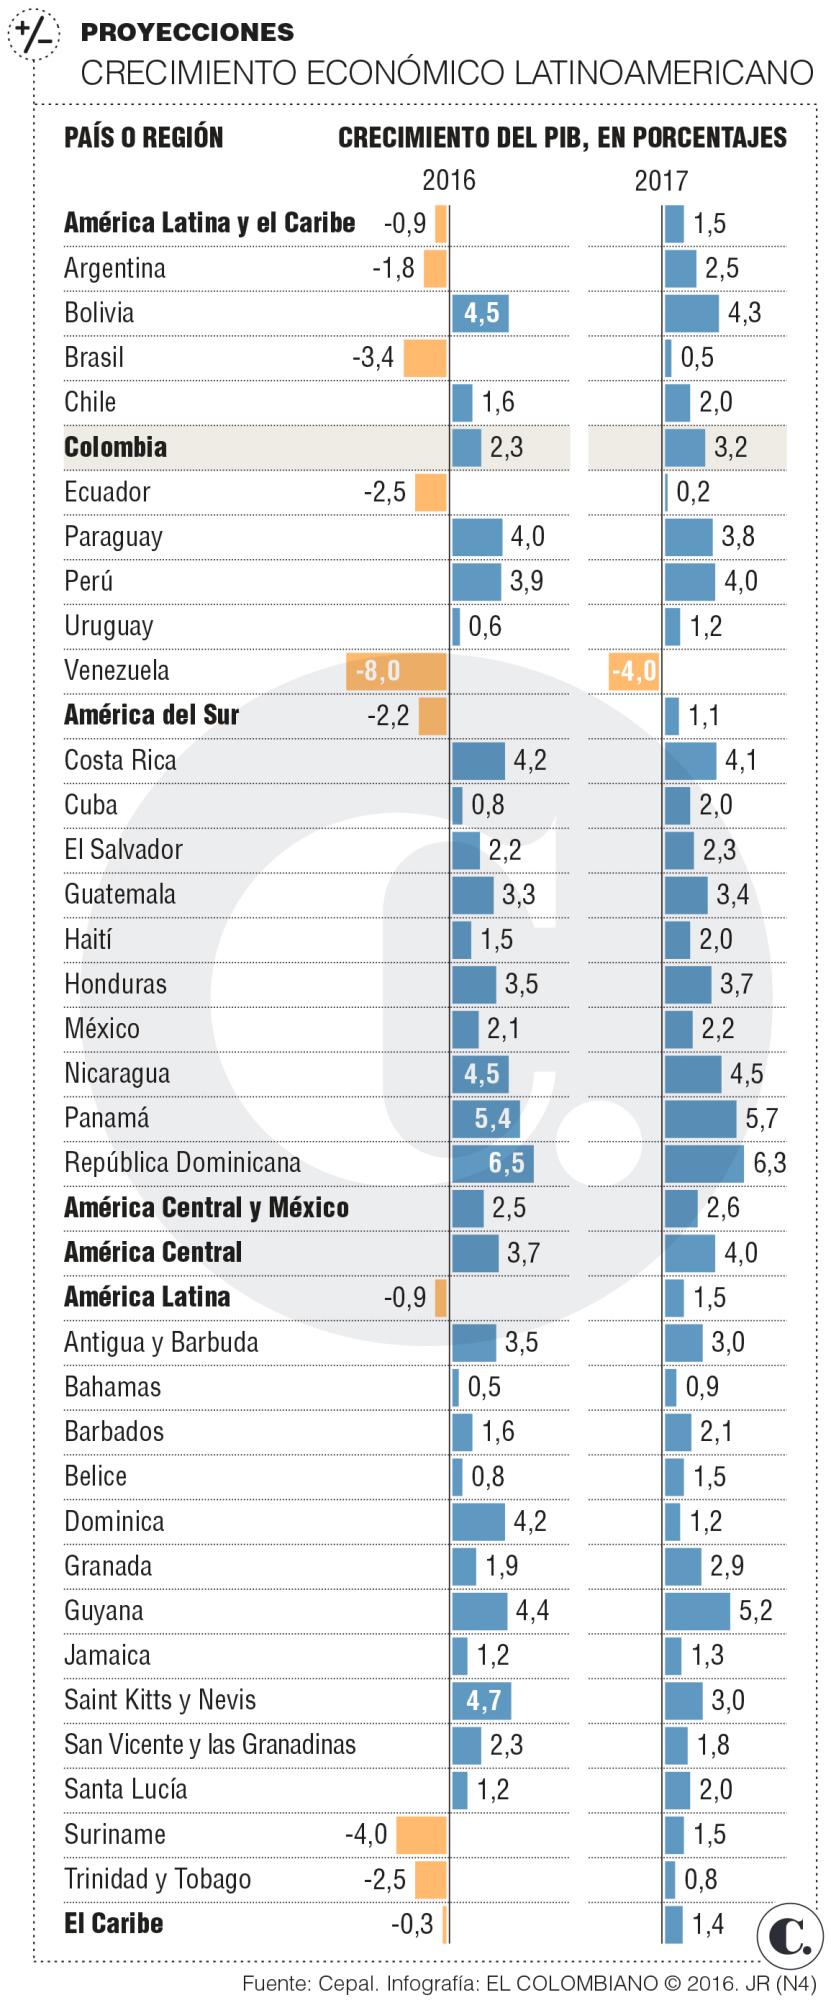 La economía colombiana crecerá 2,3 % en 2016: Cepal 